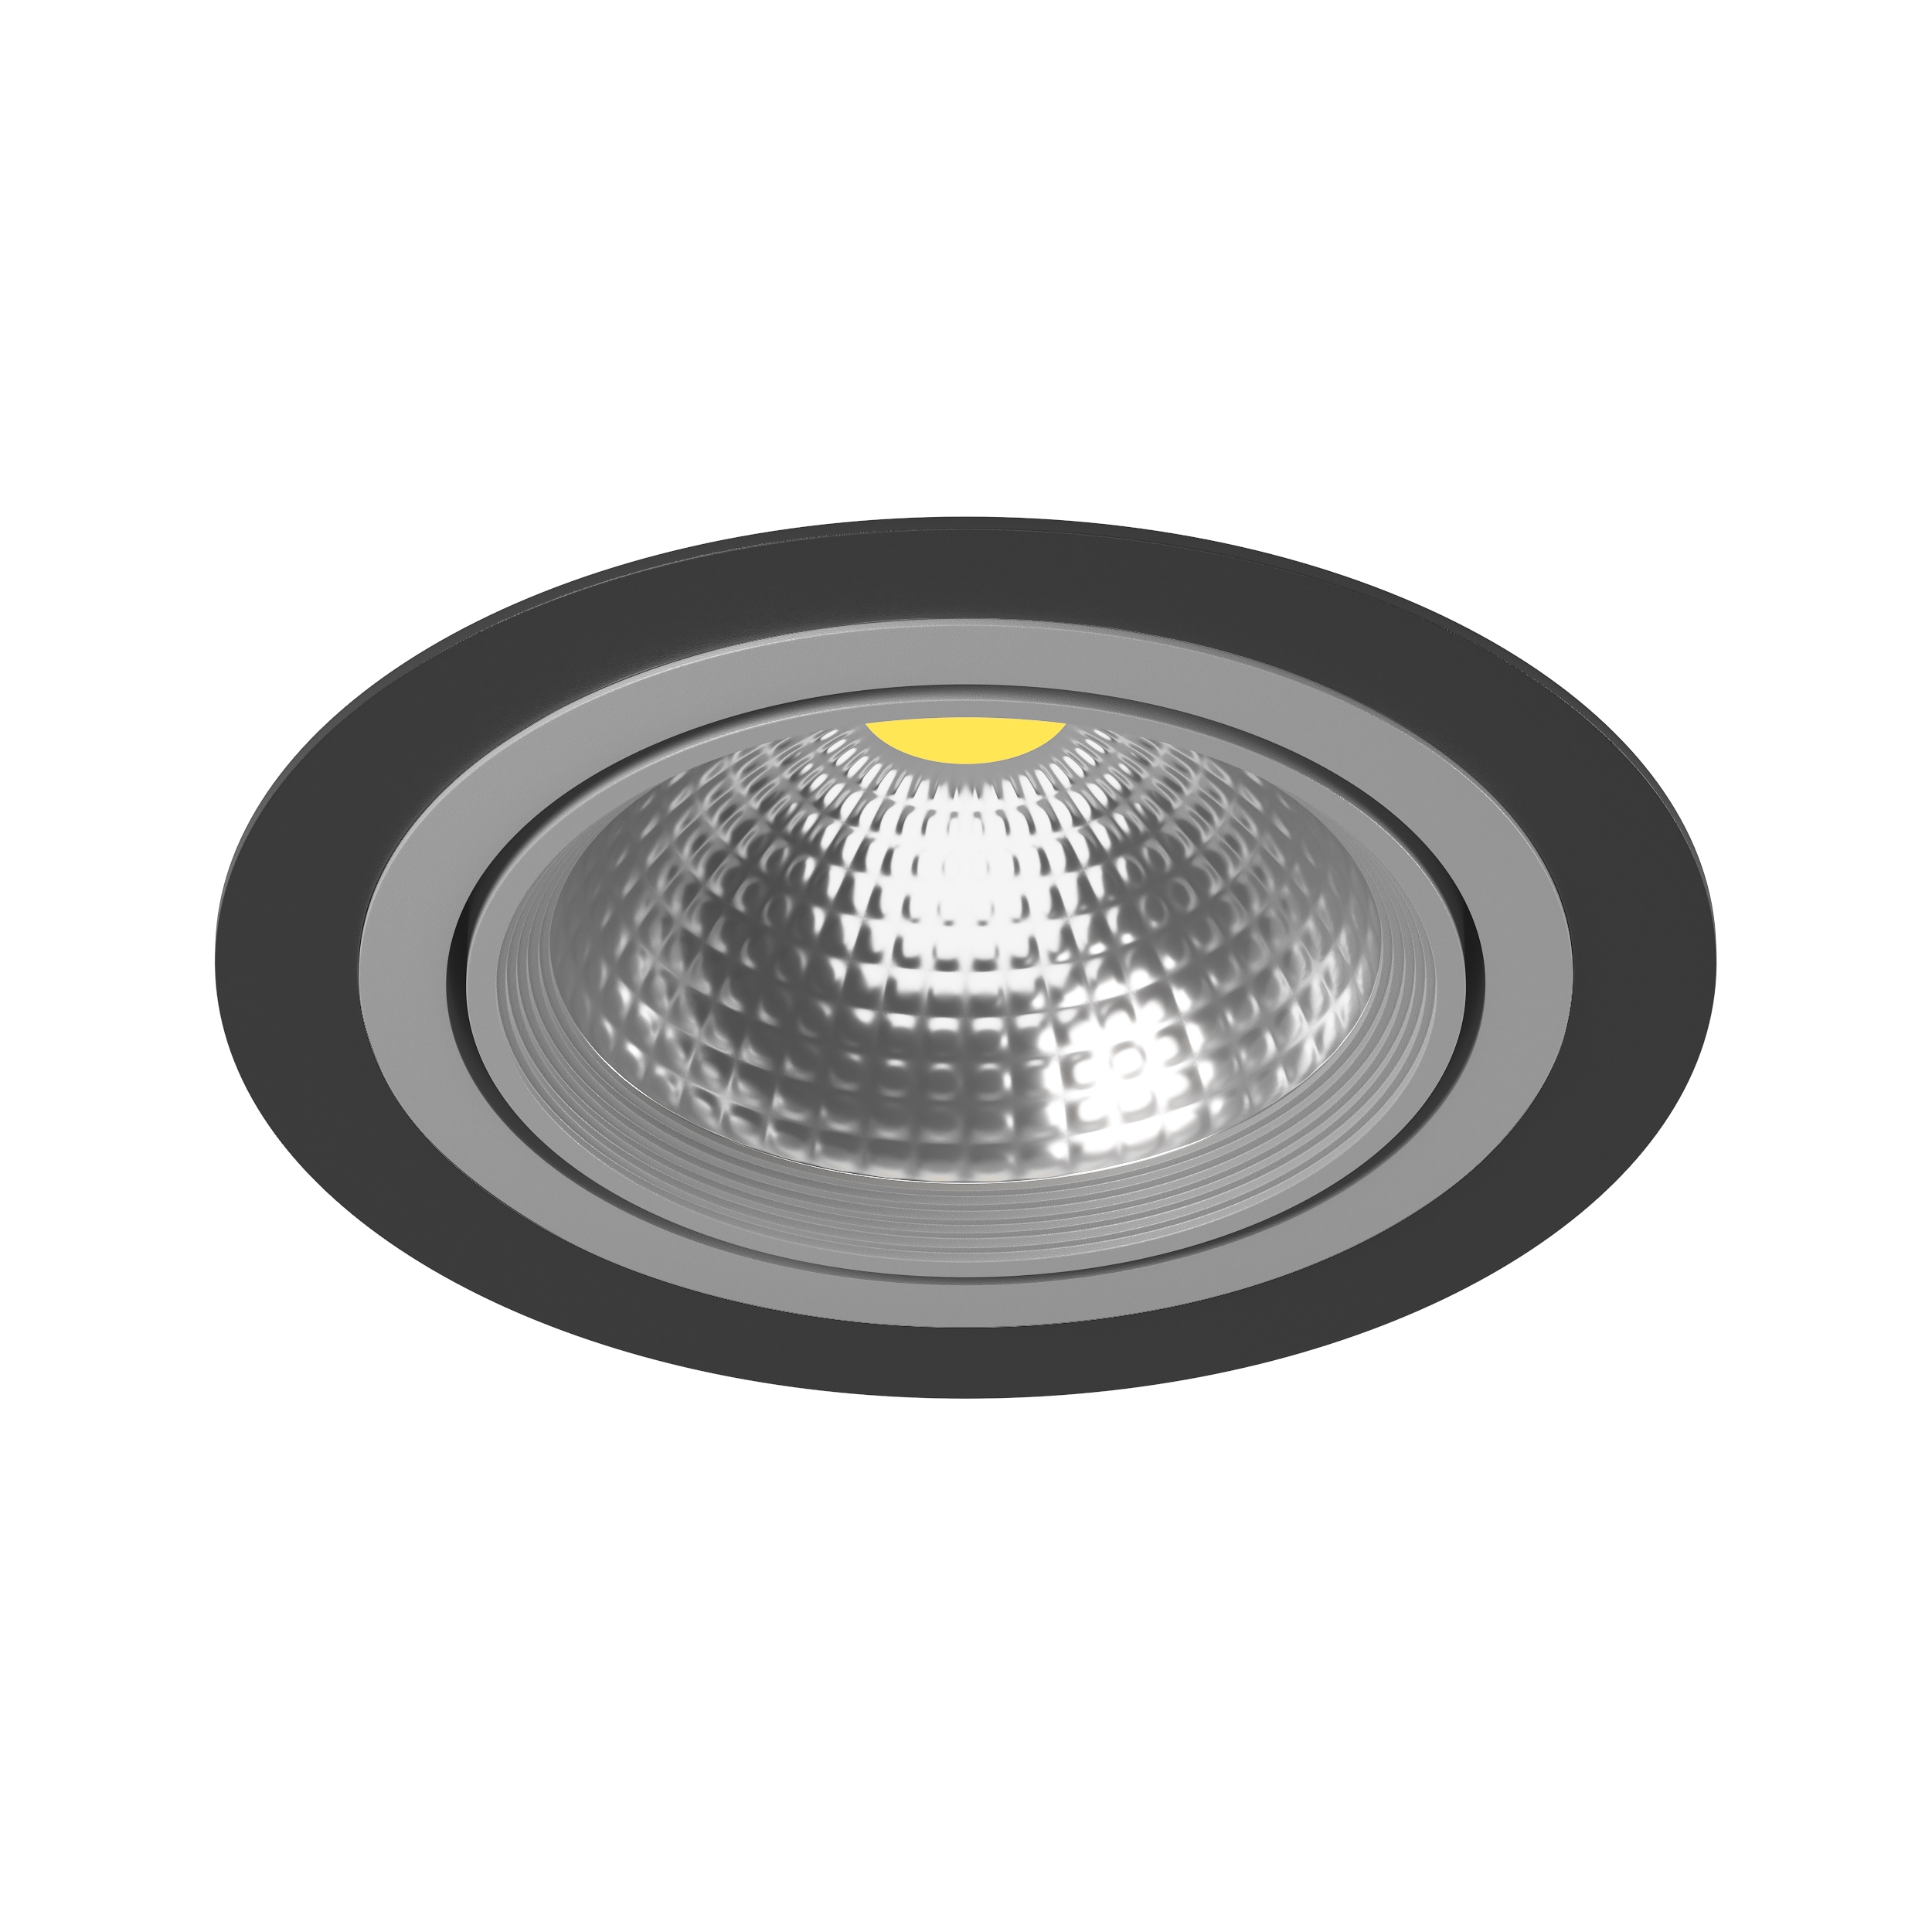 Светильники Lightstar: накладные встраиваемые модели, отзывы - купить в интернет-магазине.